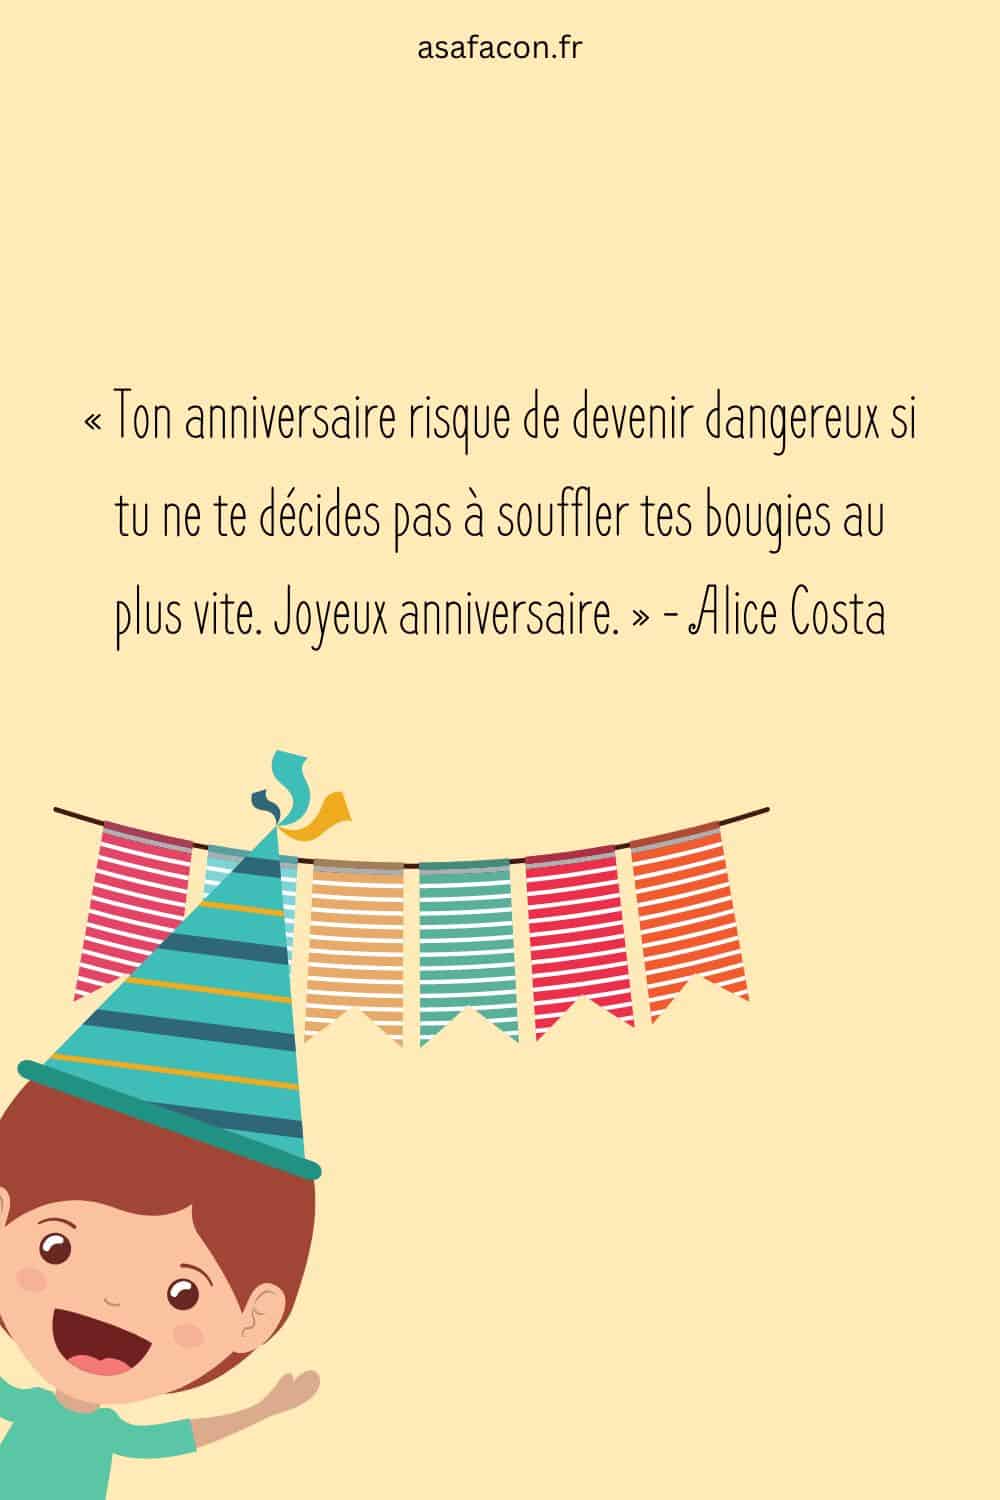 « Ton anniversaire risque de devenir dangereux si tu ne te décides pas à souffler tes bougies au plus vite. Joyeux anniversaire. » - Alice Costa